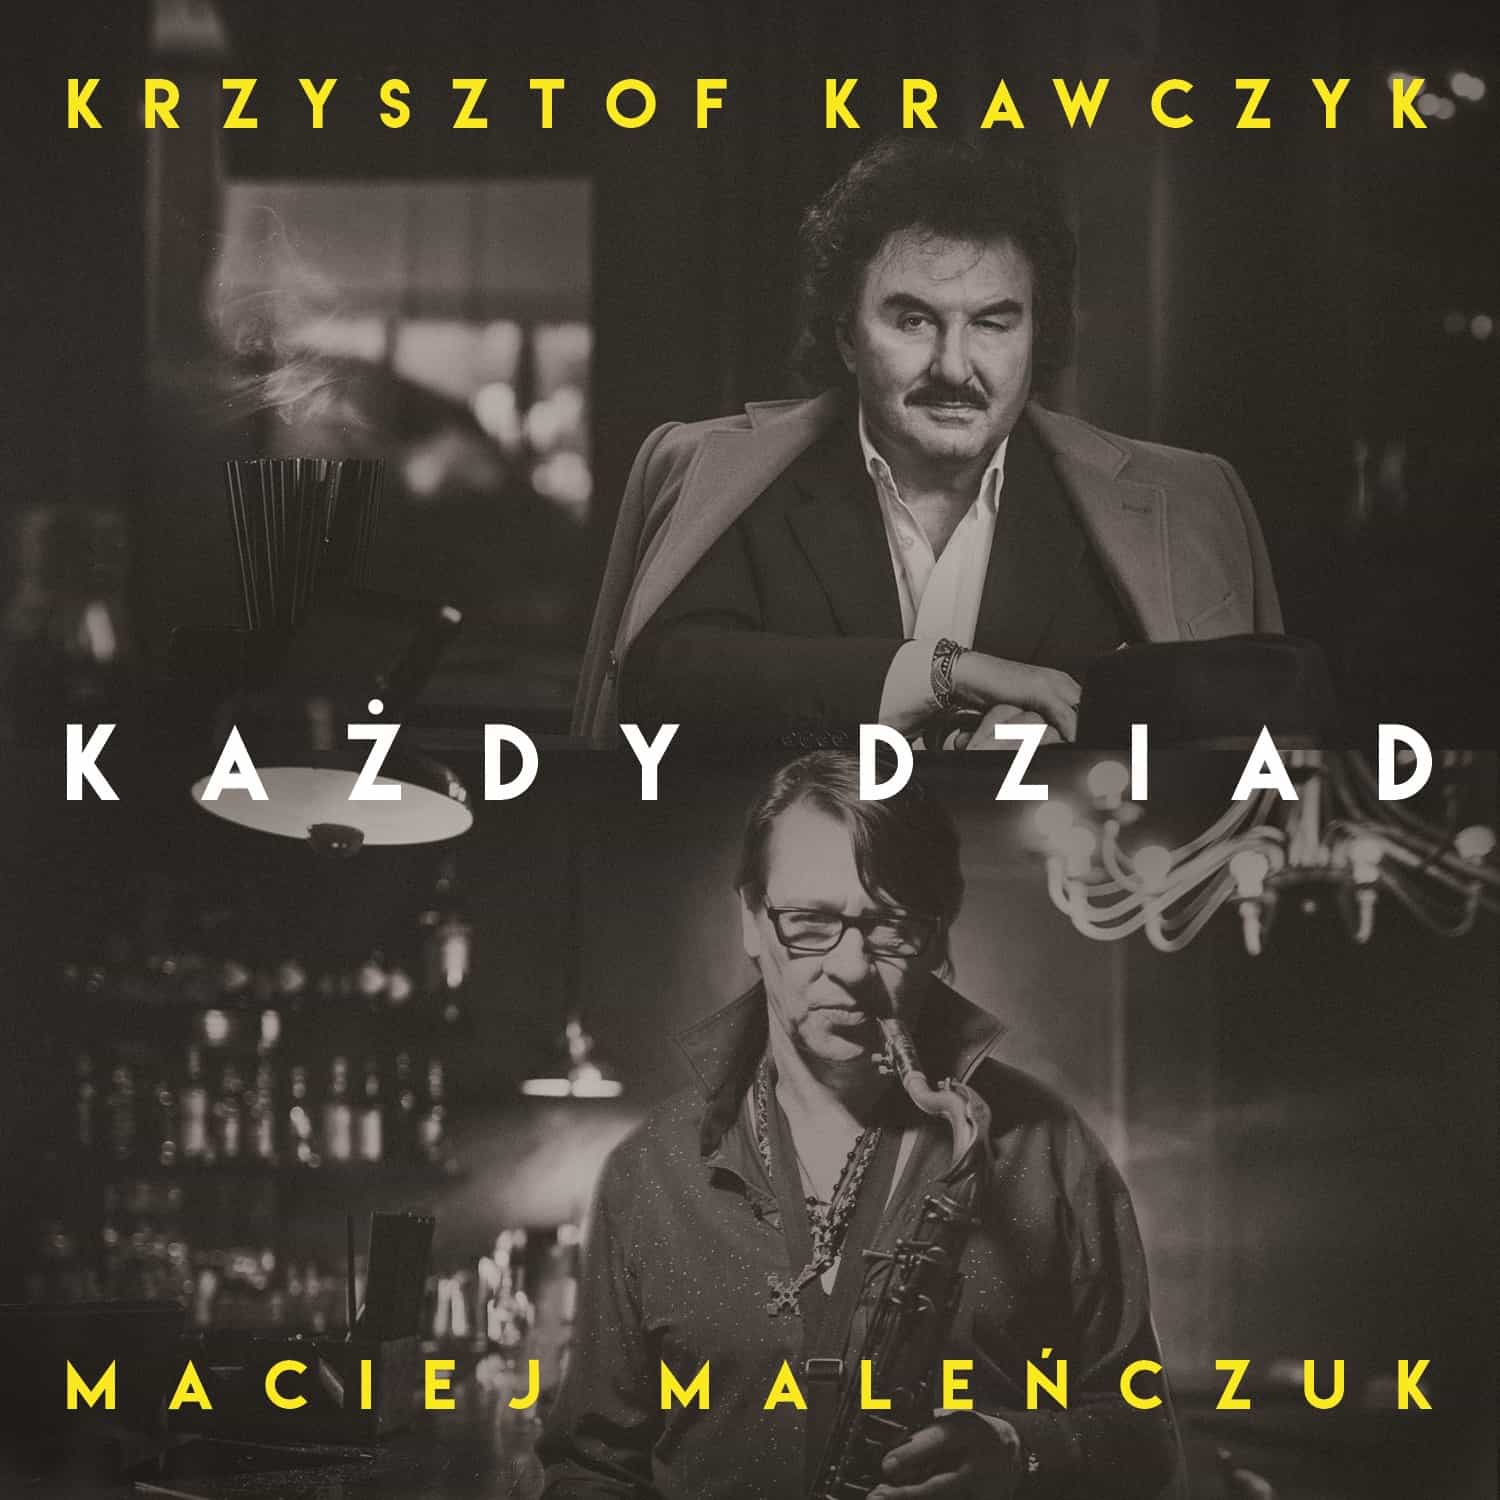 Każdy dziad czyli Krzysztof Krawczyk w duecie z Maciejem Maleńczukiem